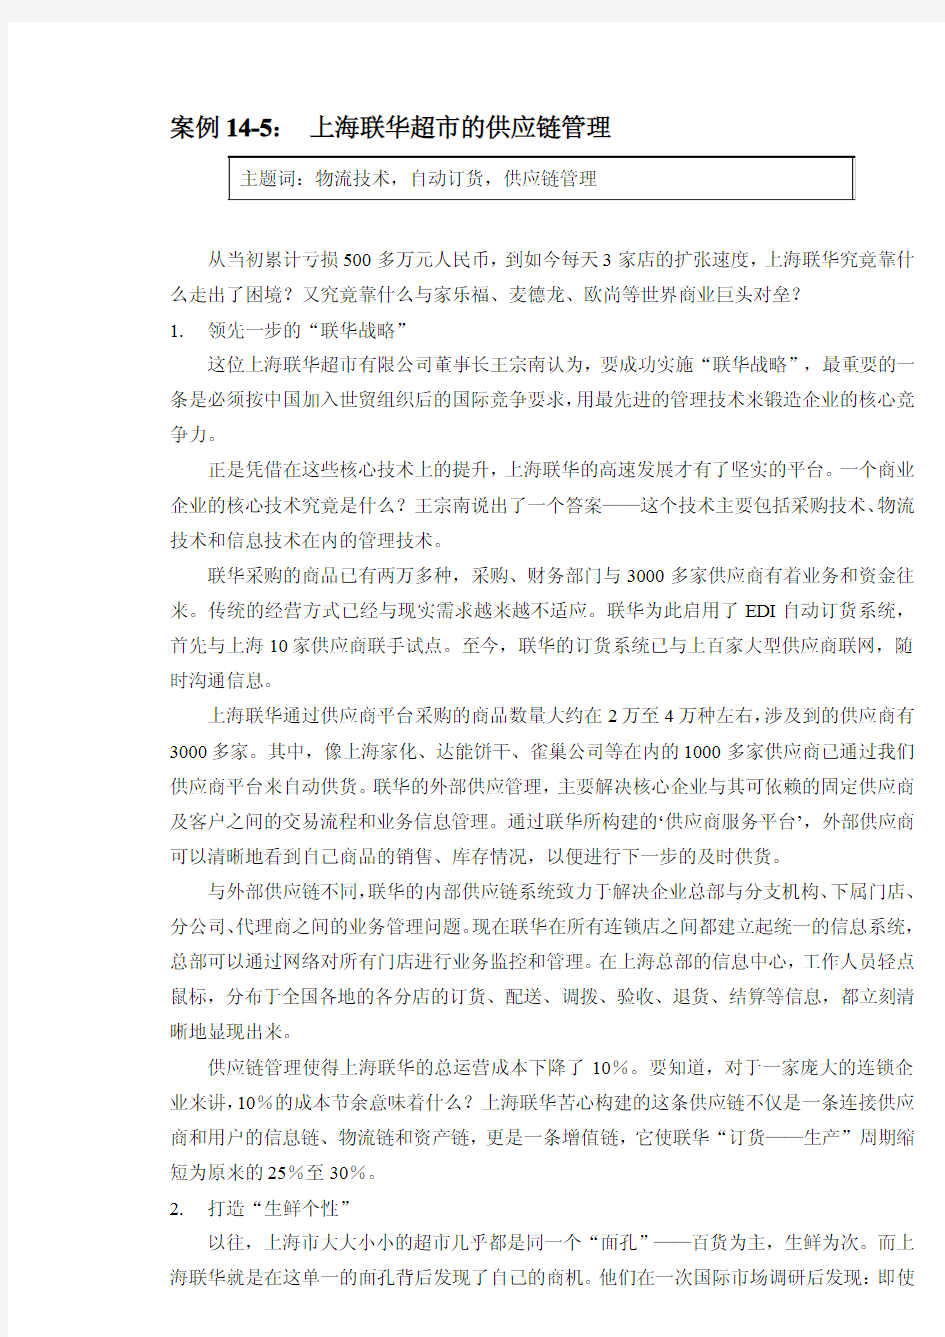 案例14-5： 上海联华超市的供应链管理